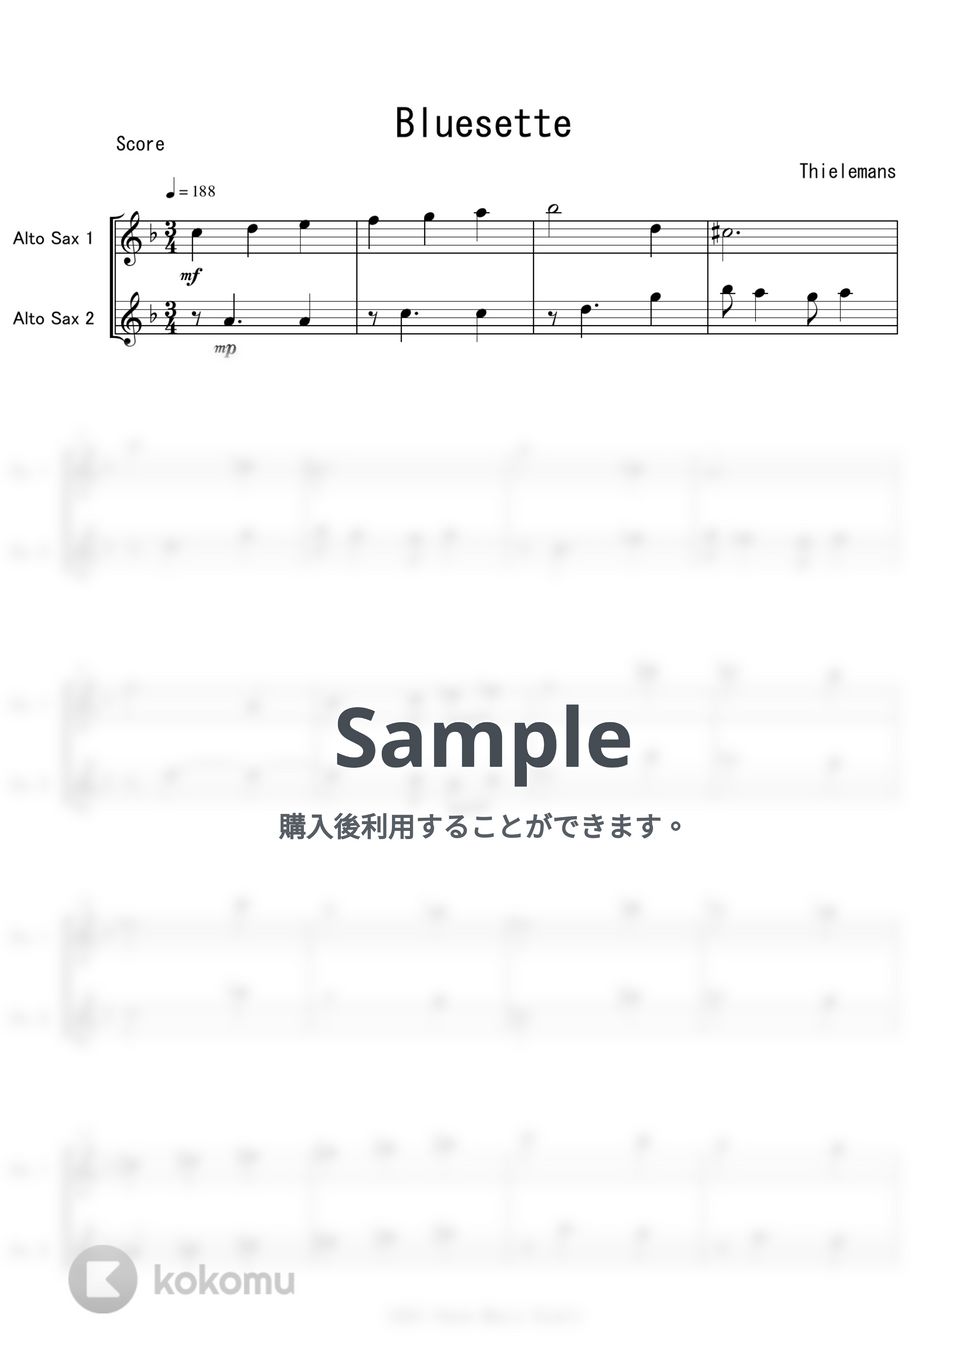 シールマンス - Bluesette (A.Sax二重奏) by Peony